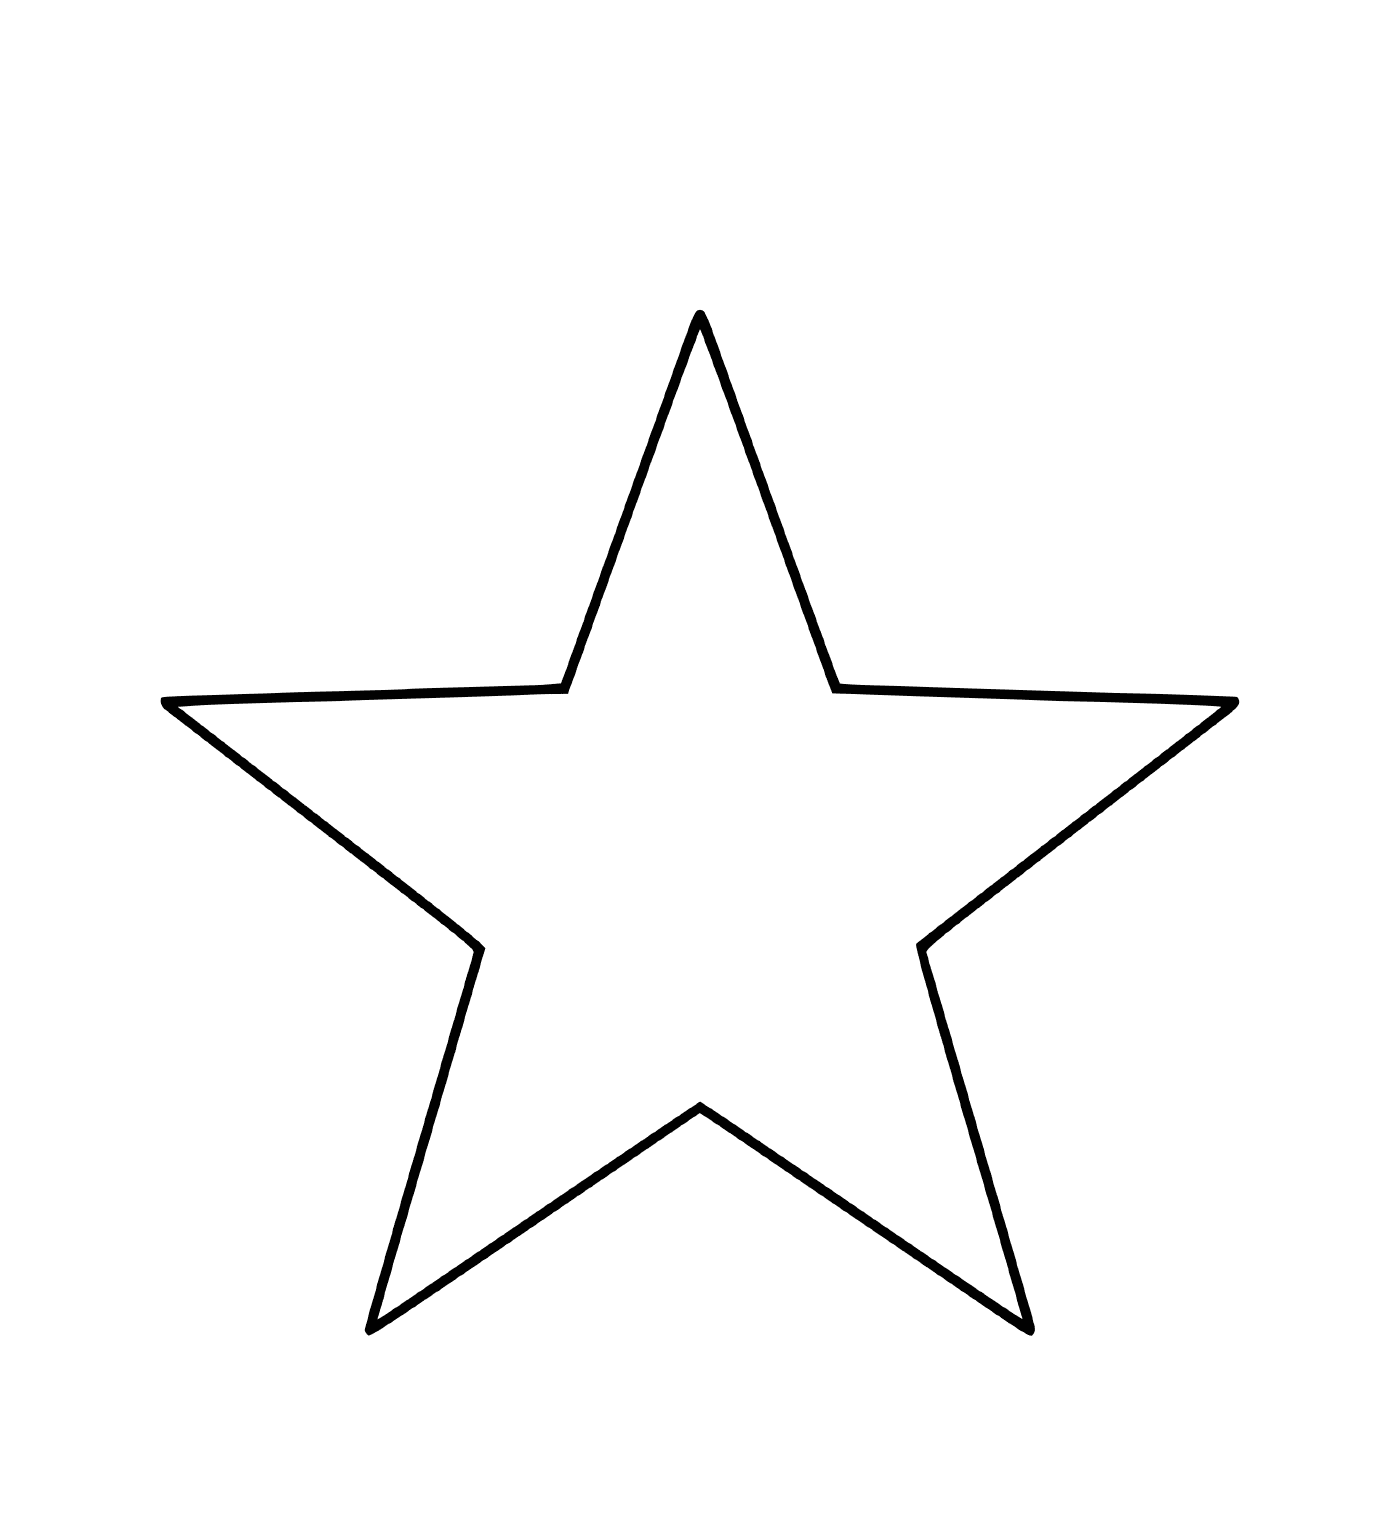  Una estrella de cinco puntas lista para ser cortada 